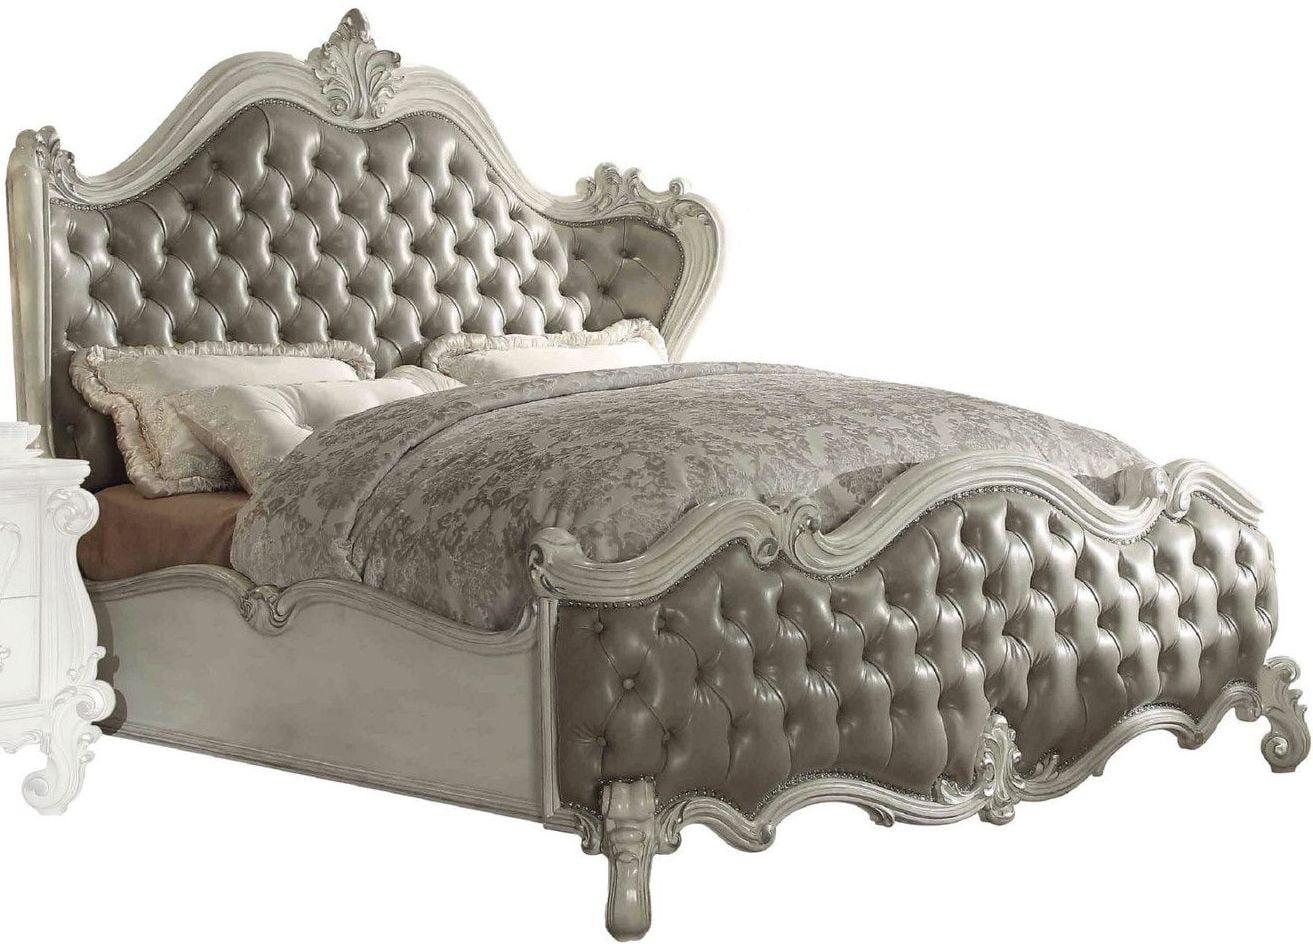 

    
Superstar Upholstered Standard King Bedroom Set 5 Pcs
